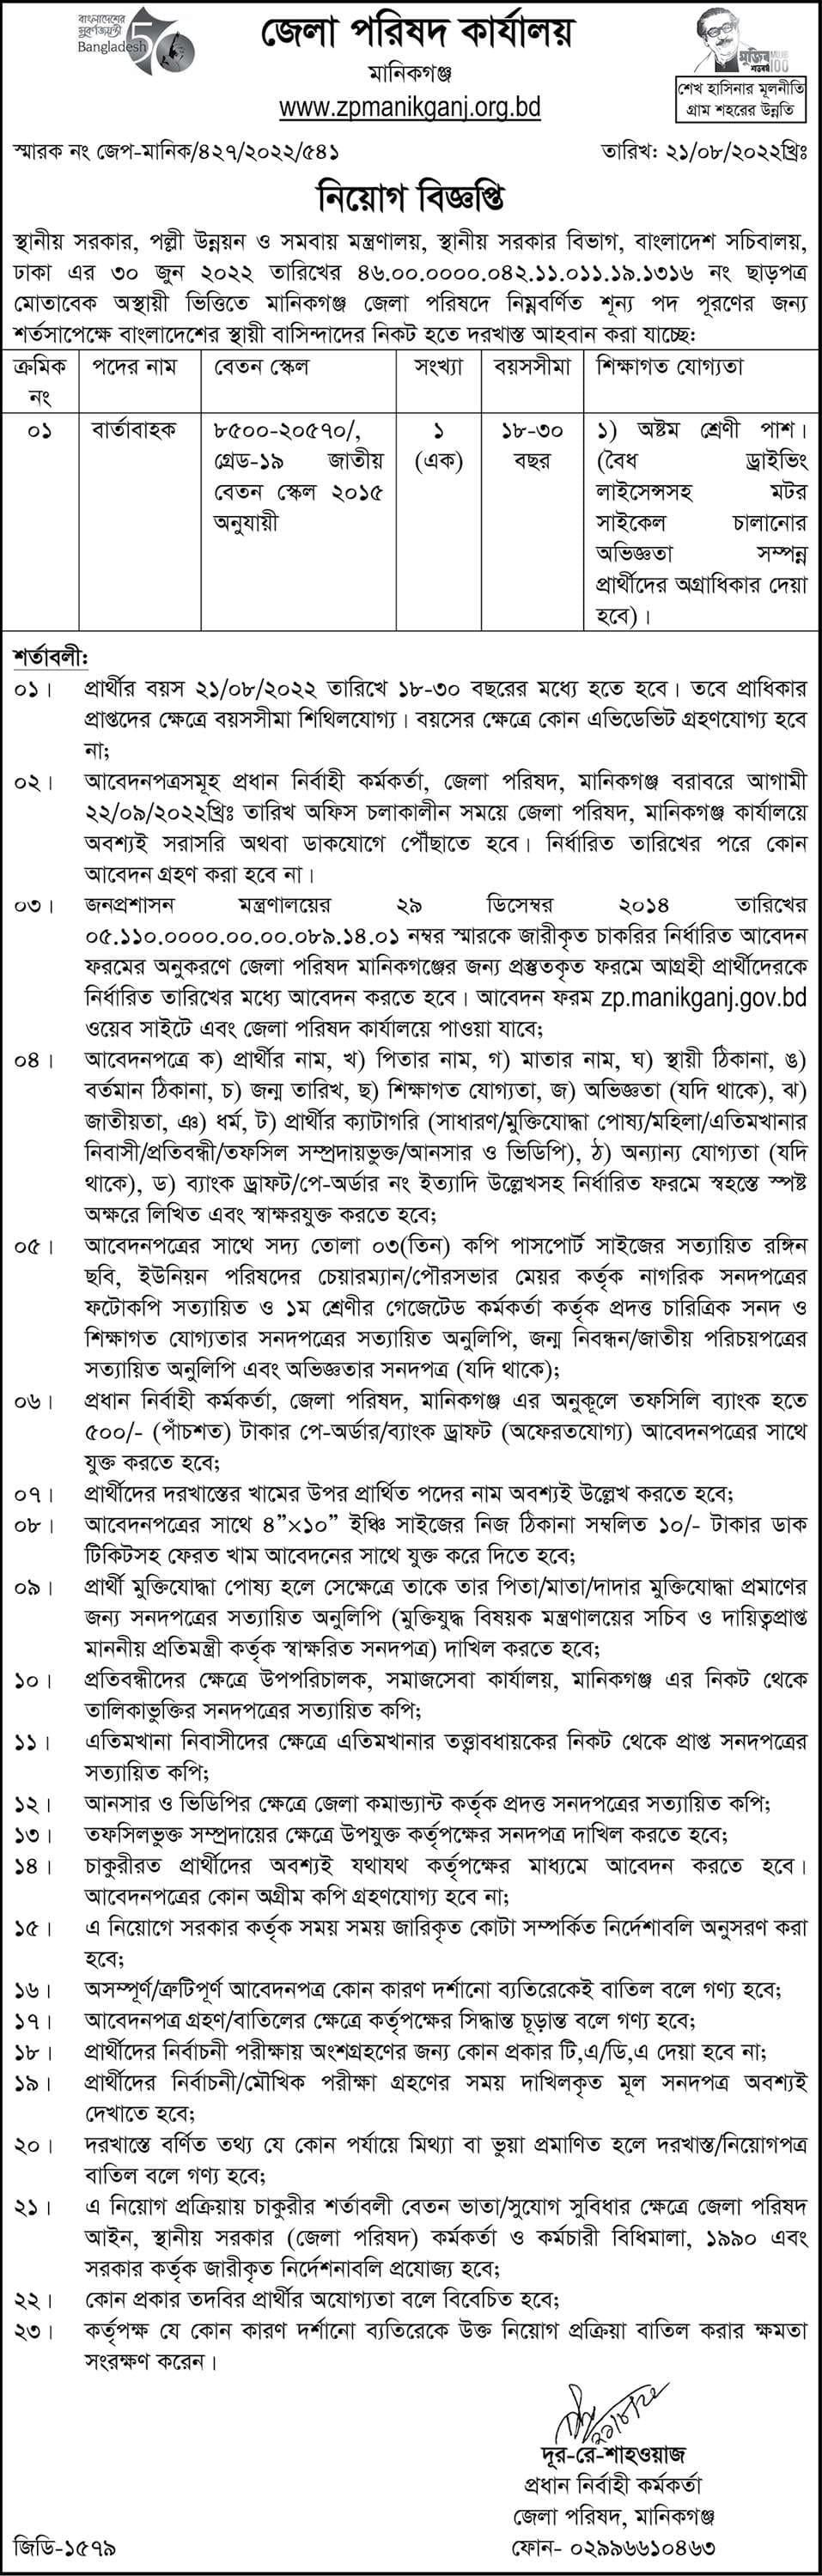 Manikganj Zila Parishad Job Circular 2023